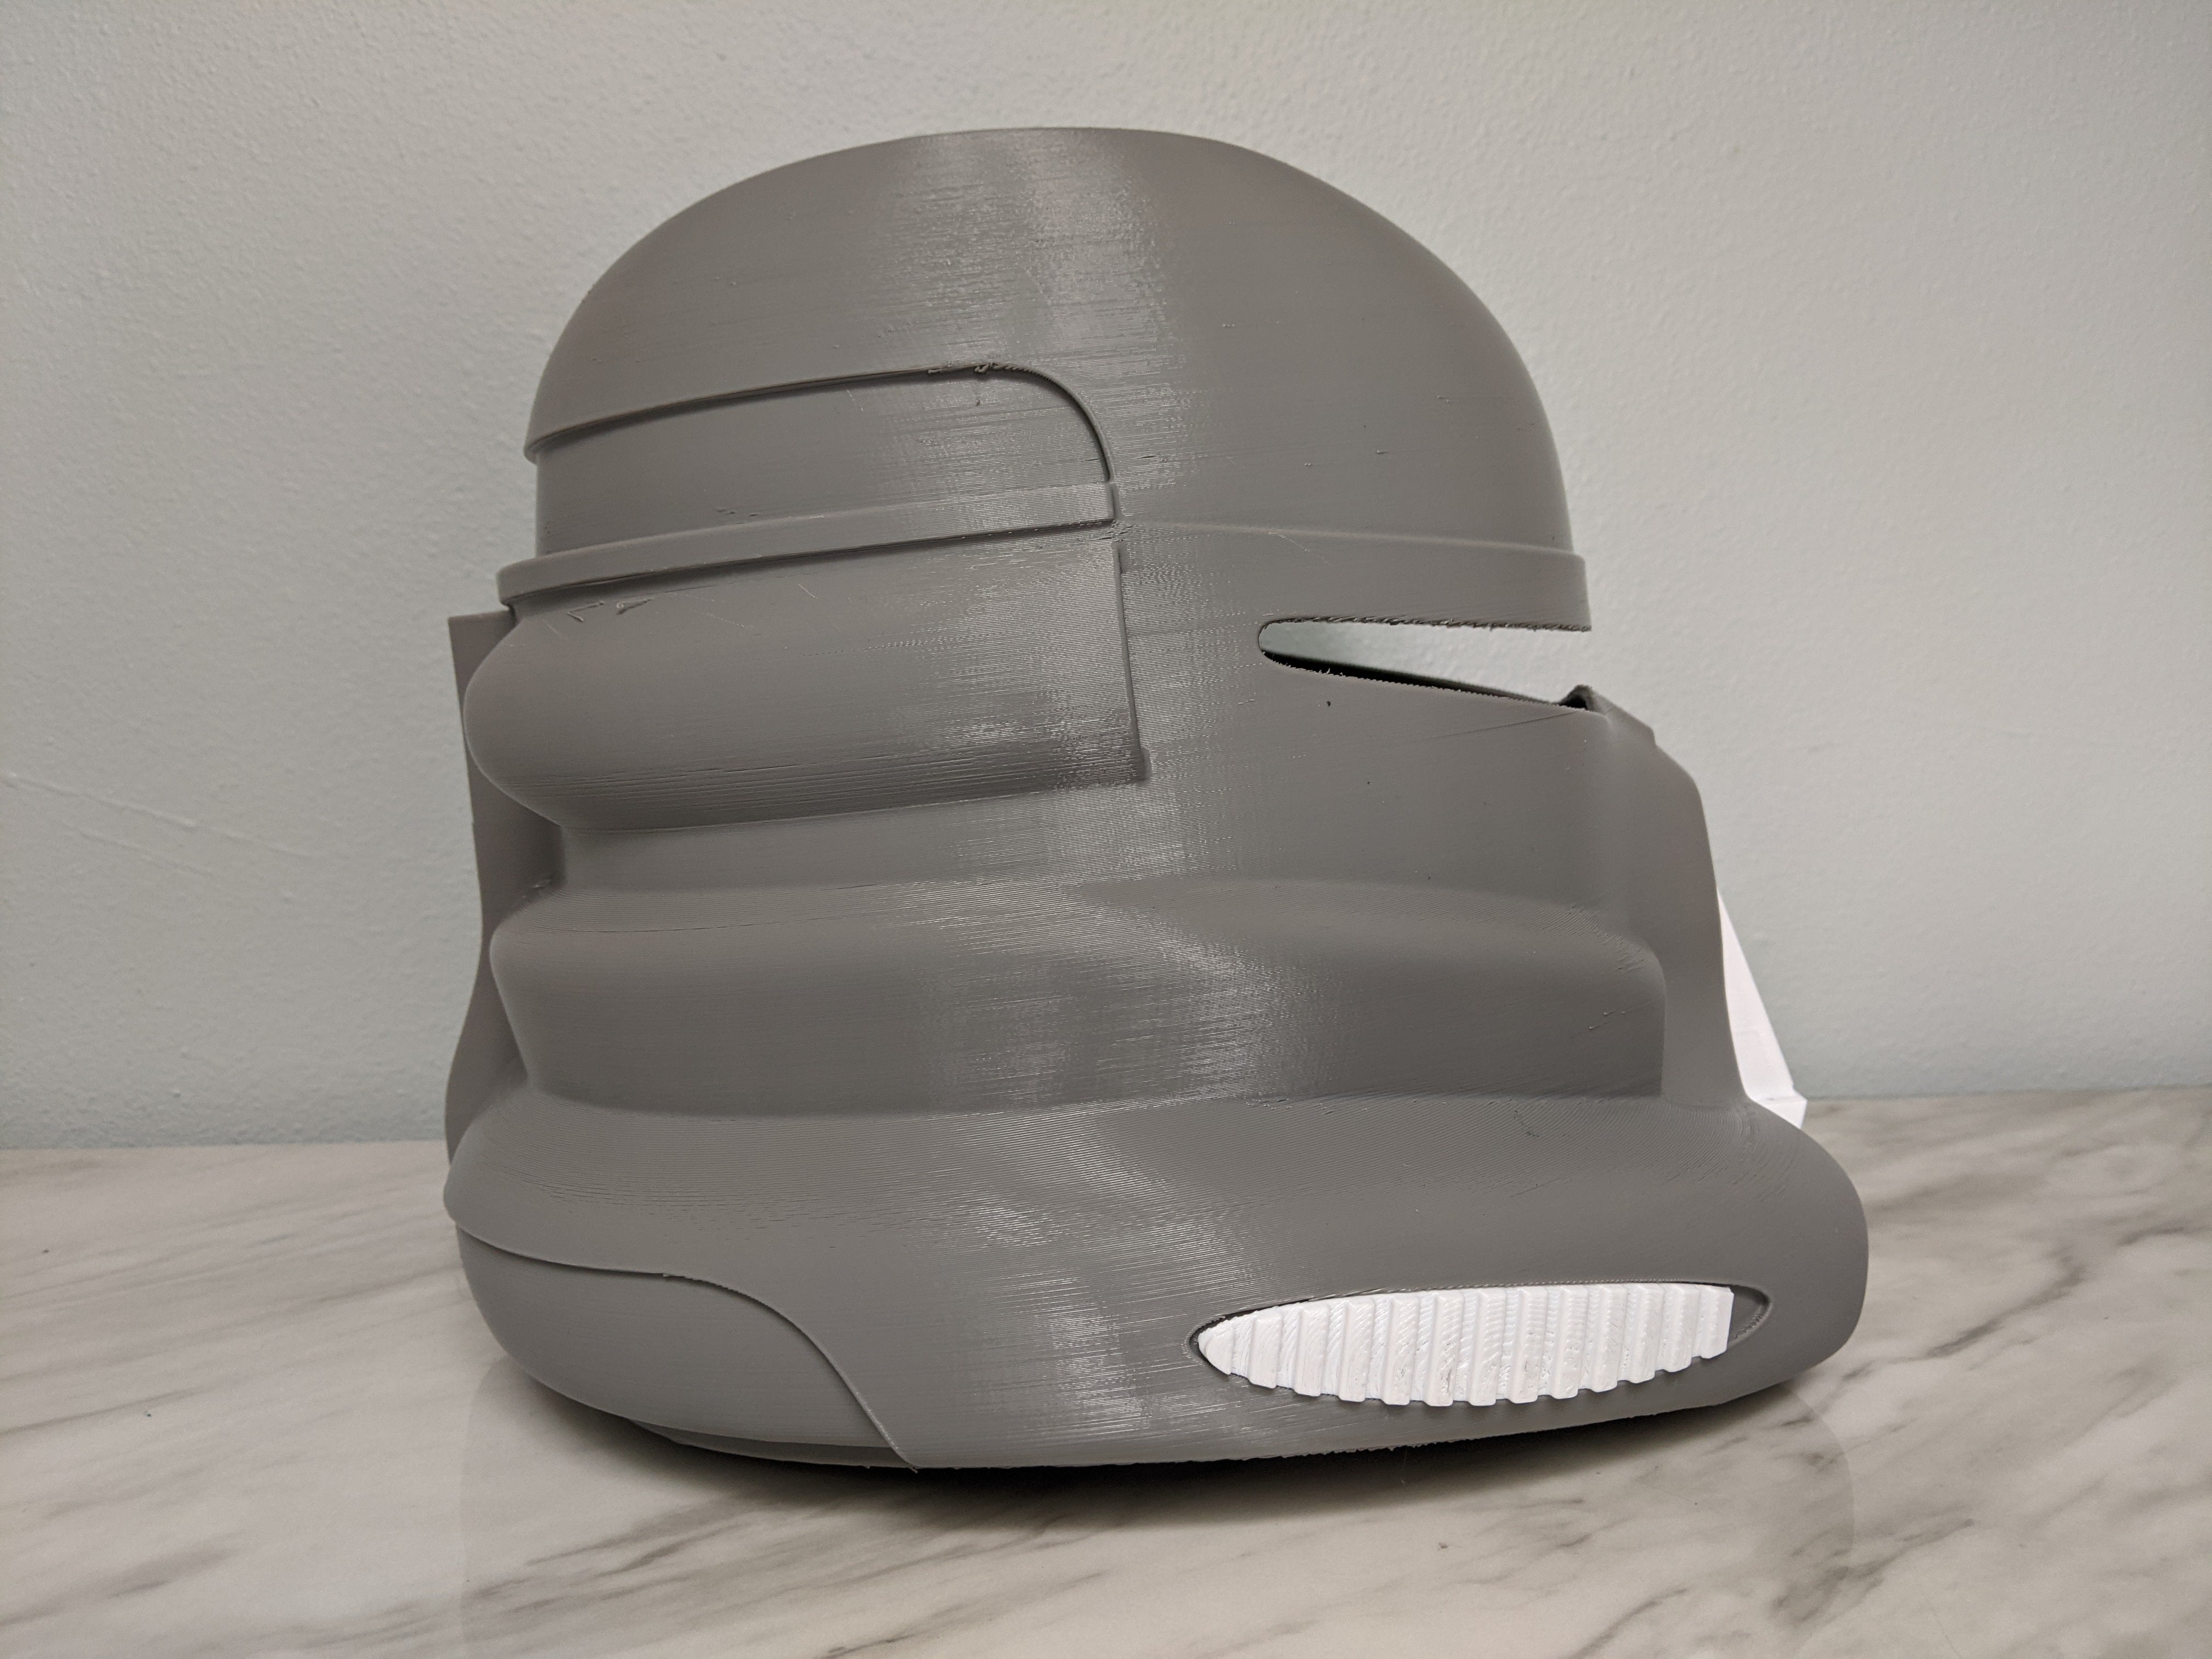 Purge Trooper Helmet - DIY - Galactic Armory